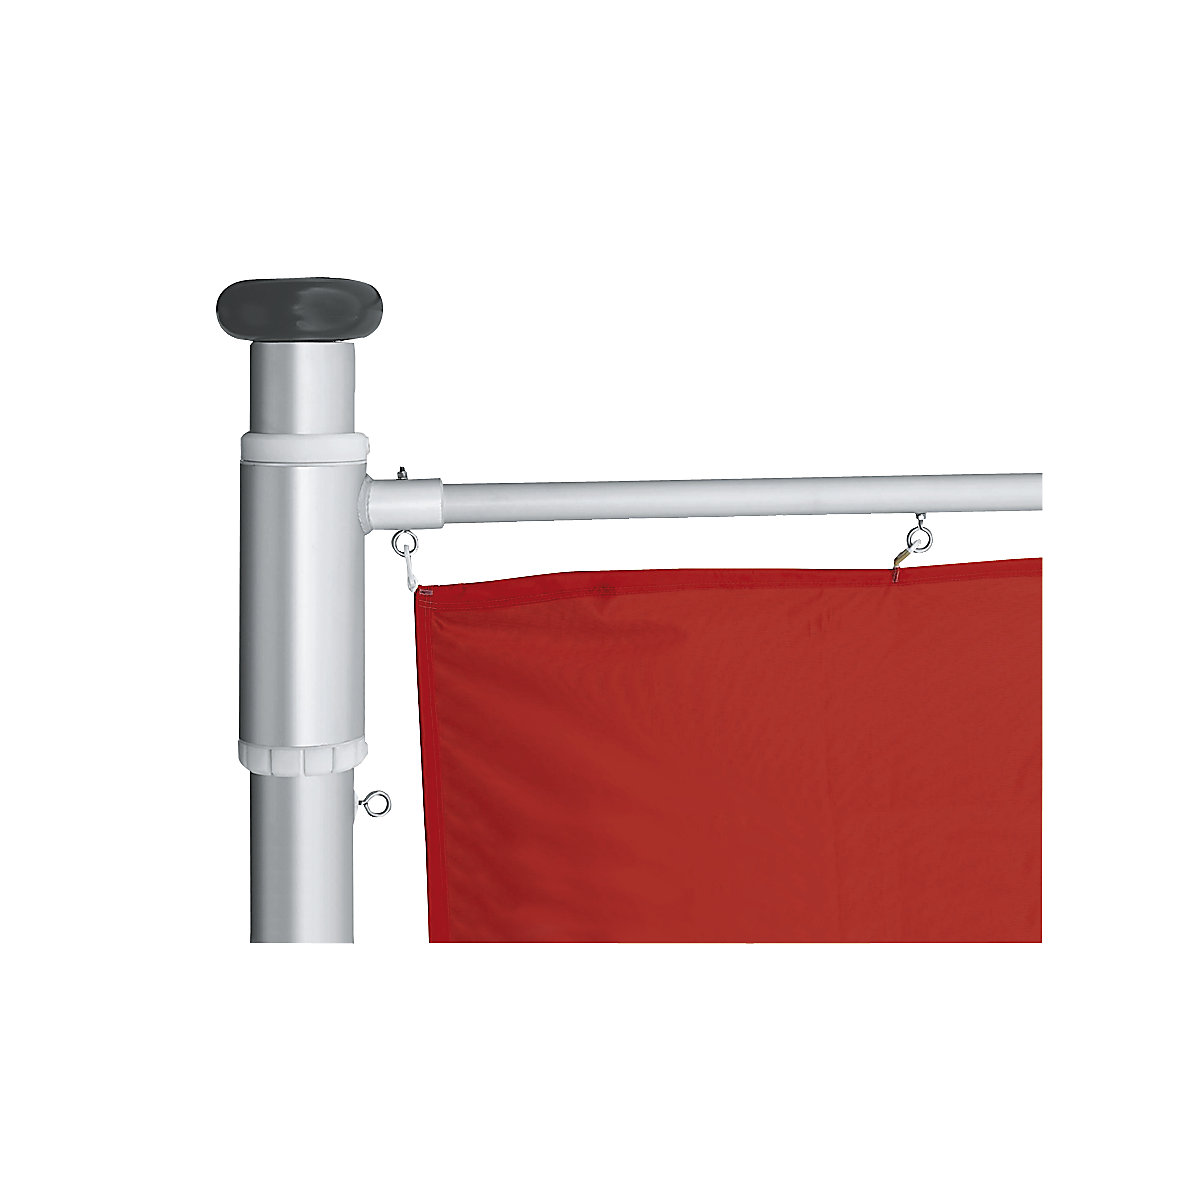 PRESTIGE aluminium flag pole – Mannus (Product illustration 2)-1